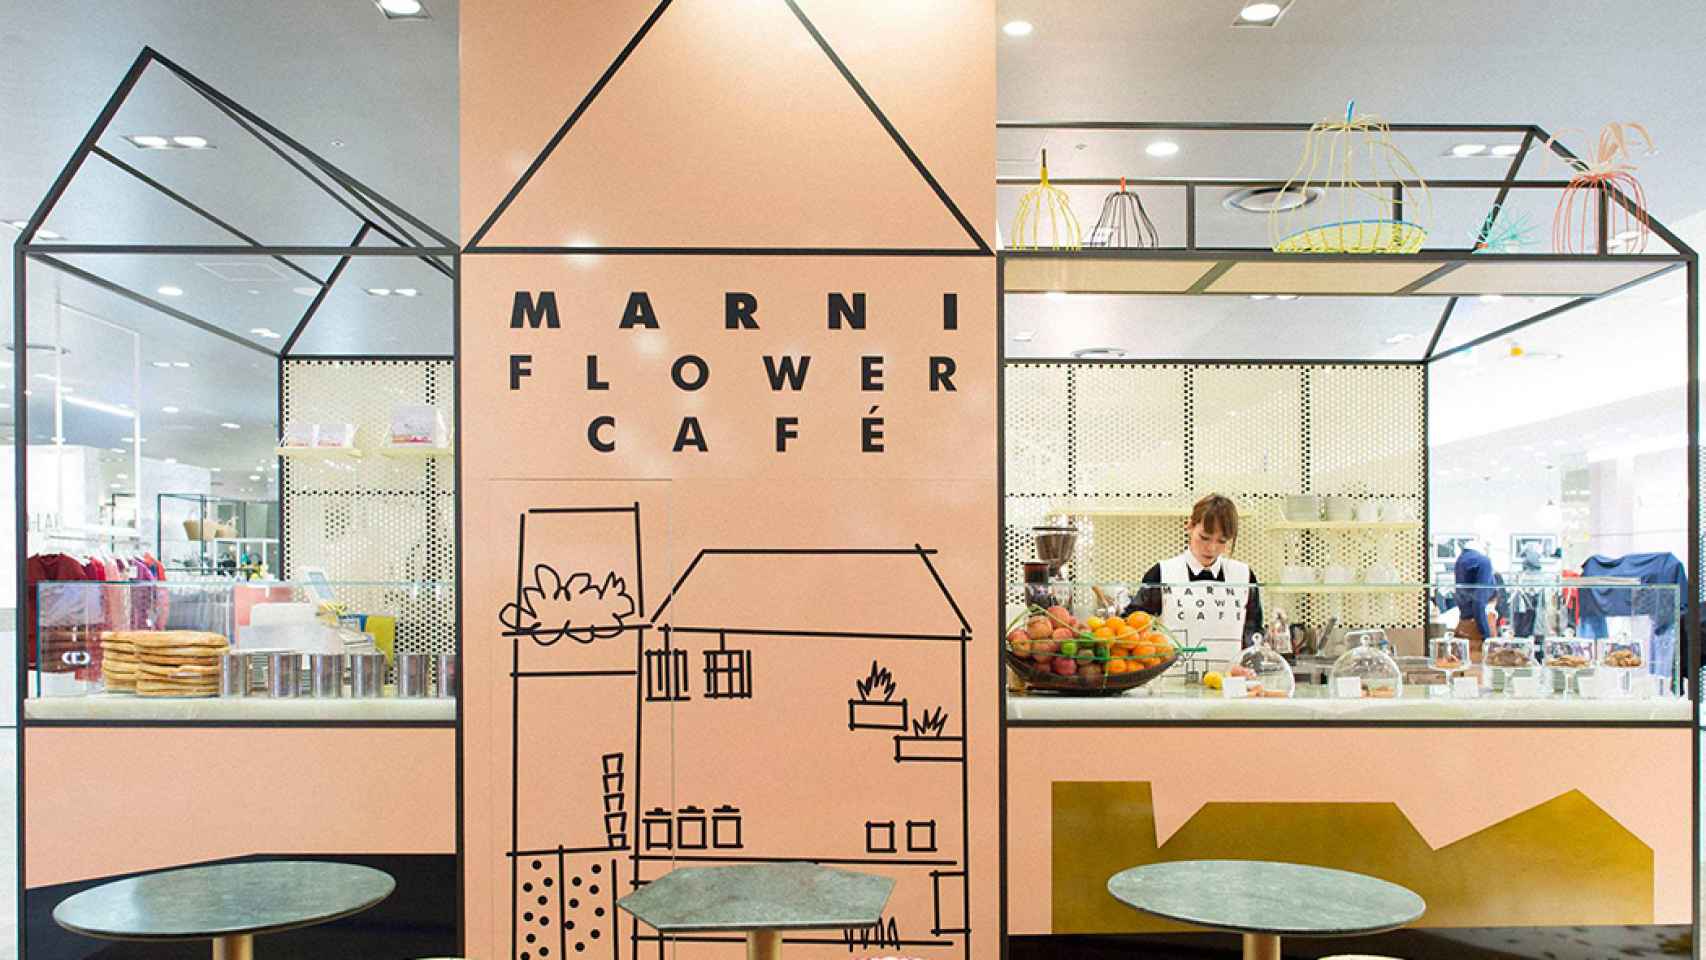 Marni Flower Café